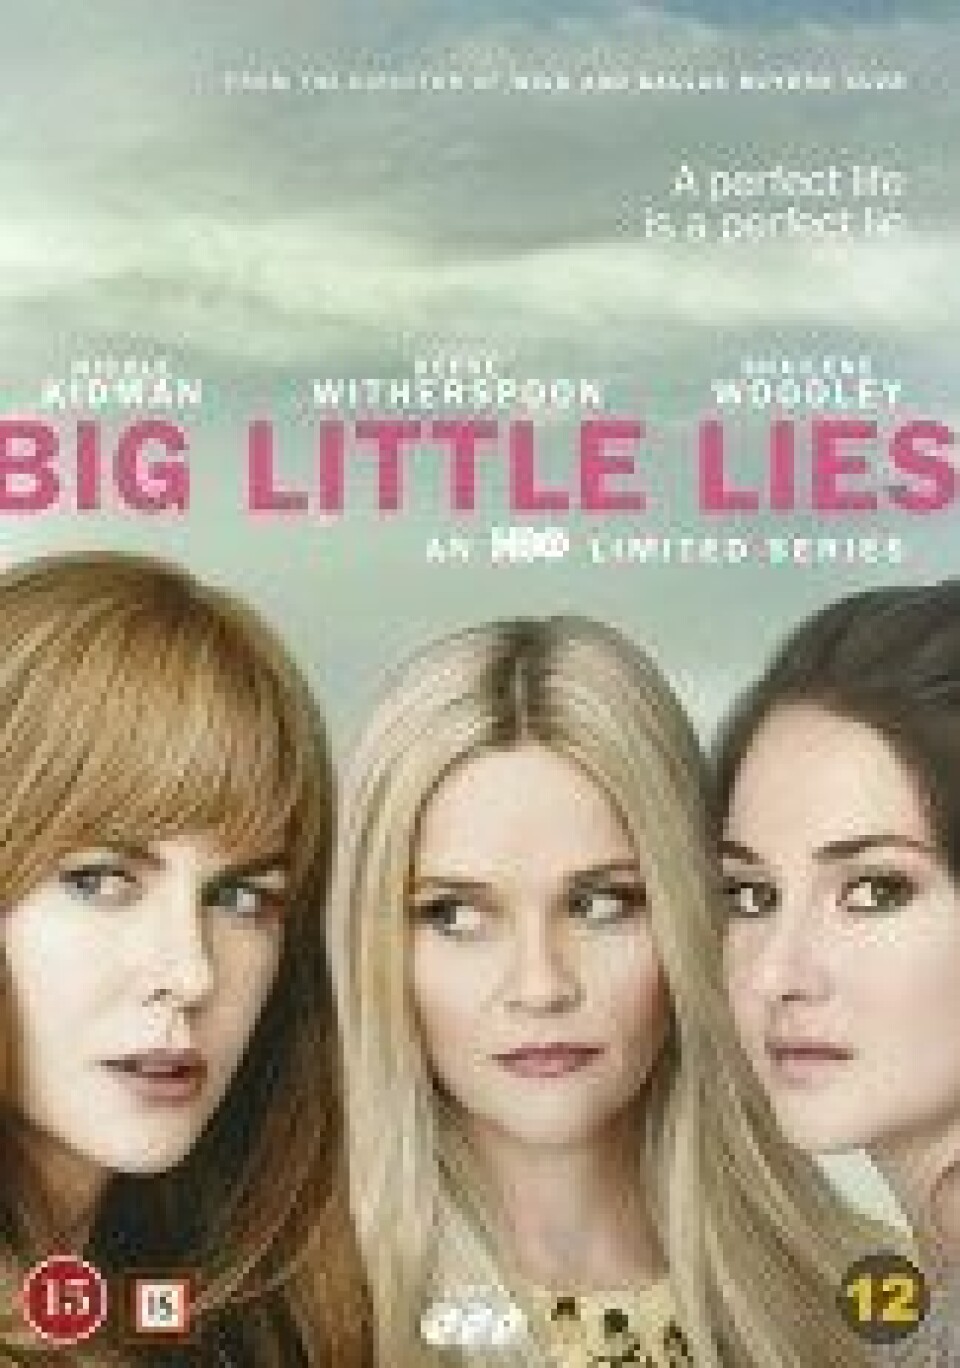 Serien Big little lies på HBO basert på boken av Liane Moriarty (Hente fra: https://www.platekompaniet.no)